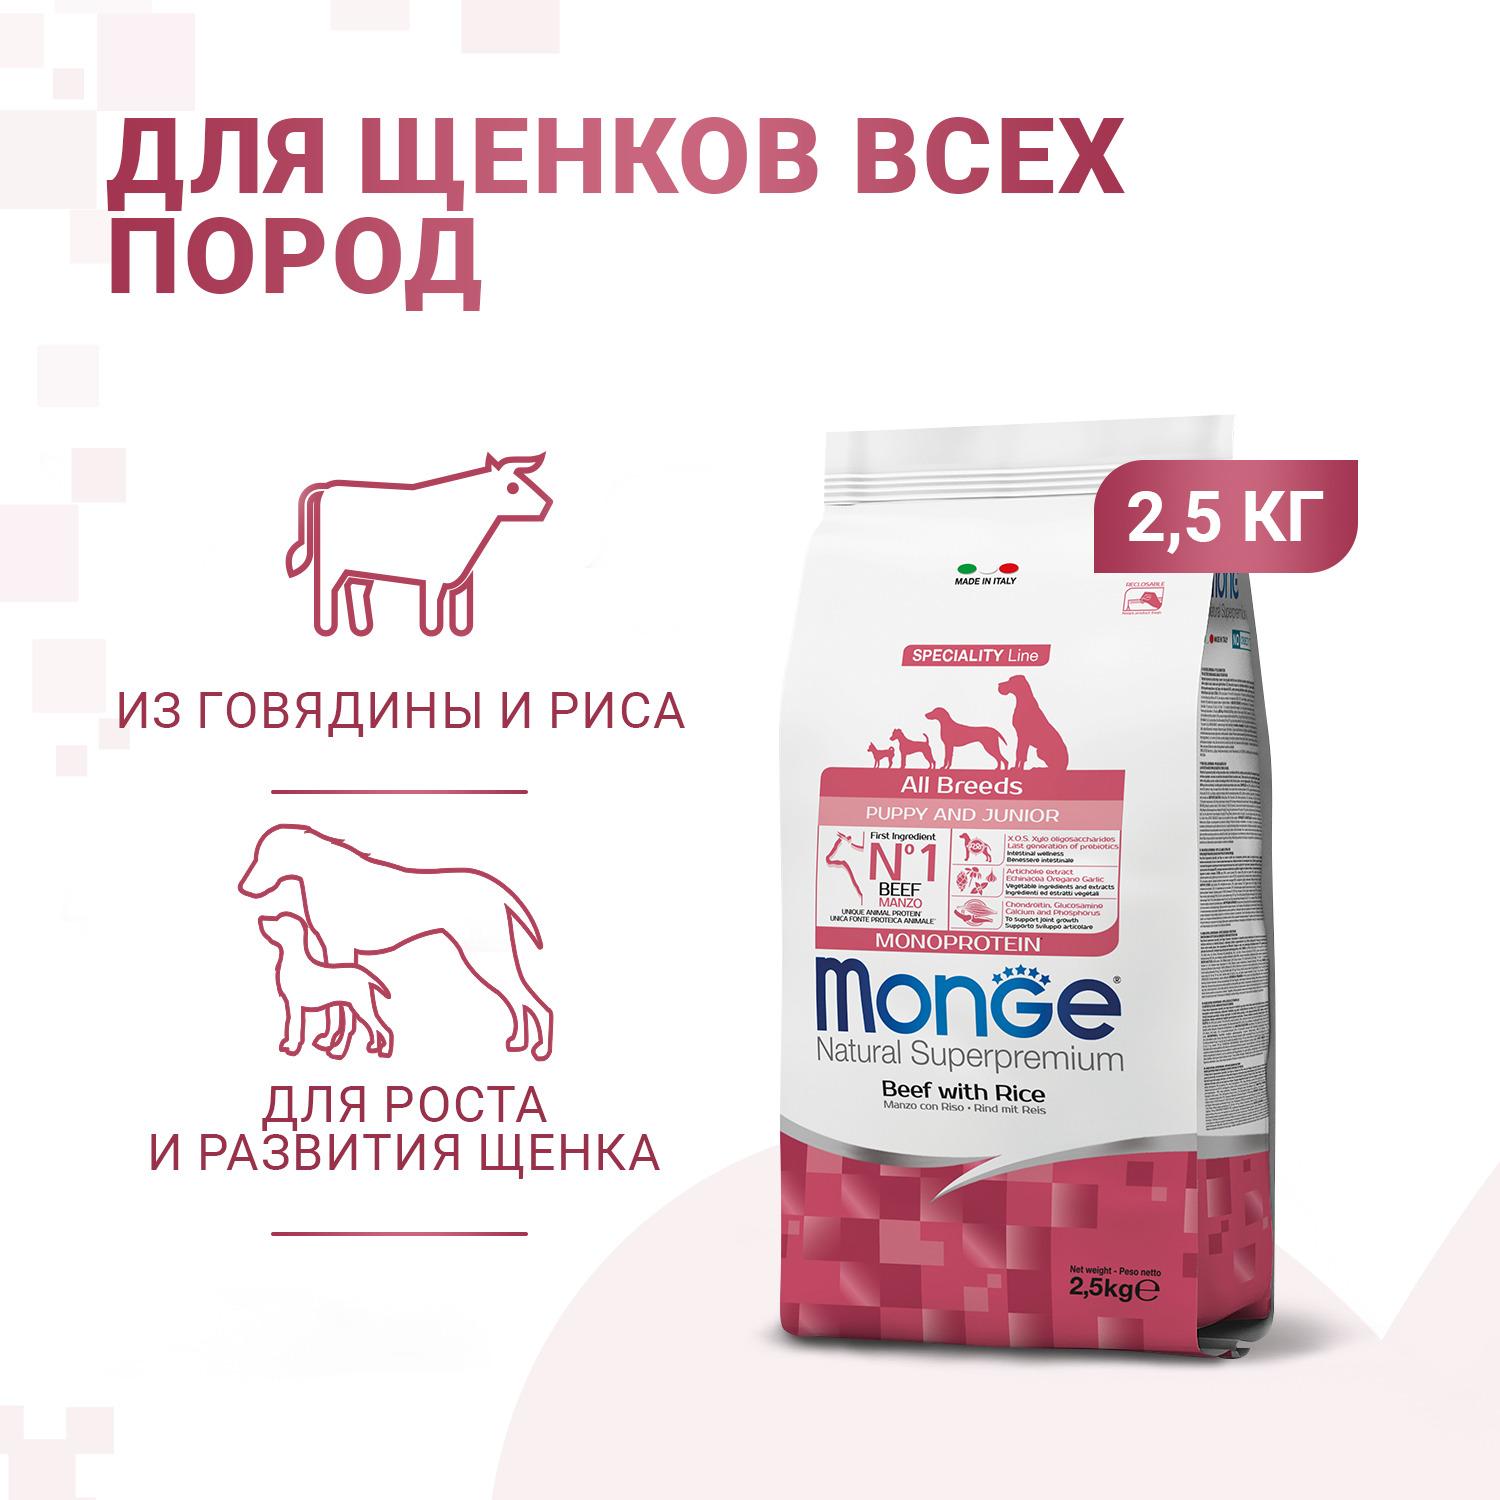 Сухой корм Monge Dog Speciality Line Monoprotein Puppy & Junior корм для щенков всех пород, из говядины с рисом 2,5 кг